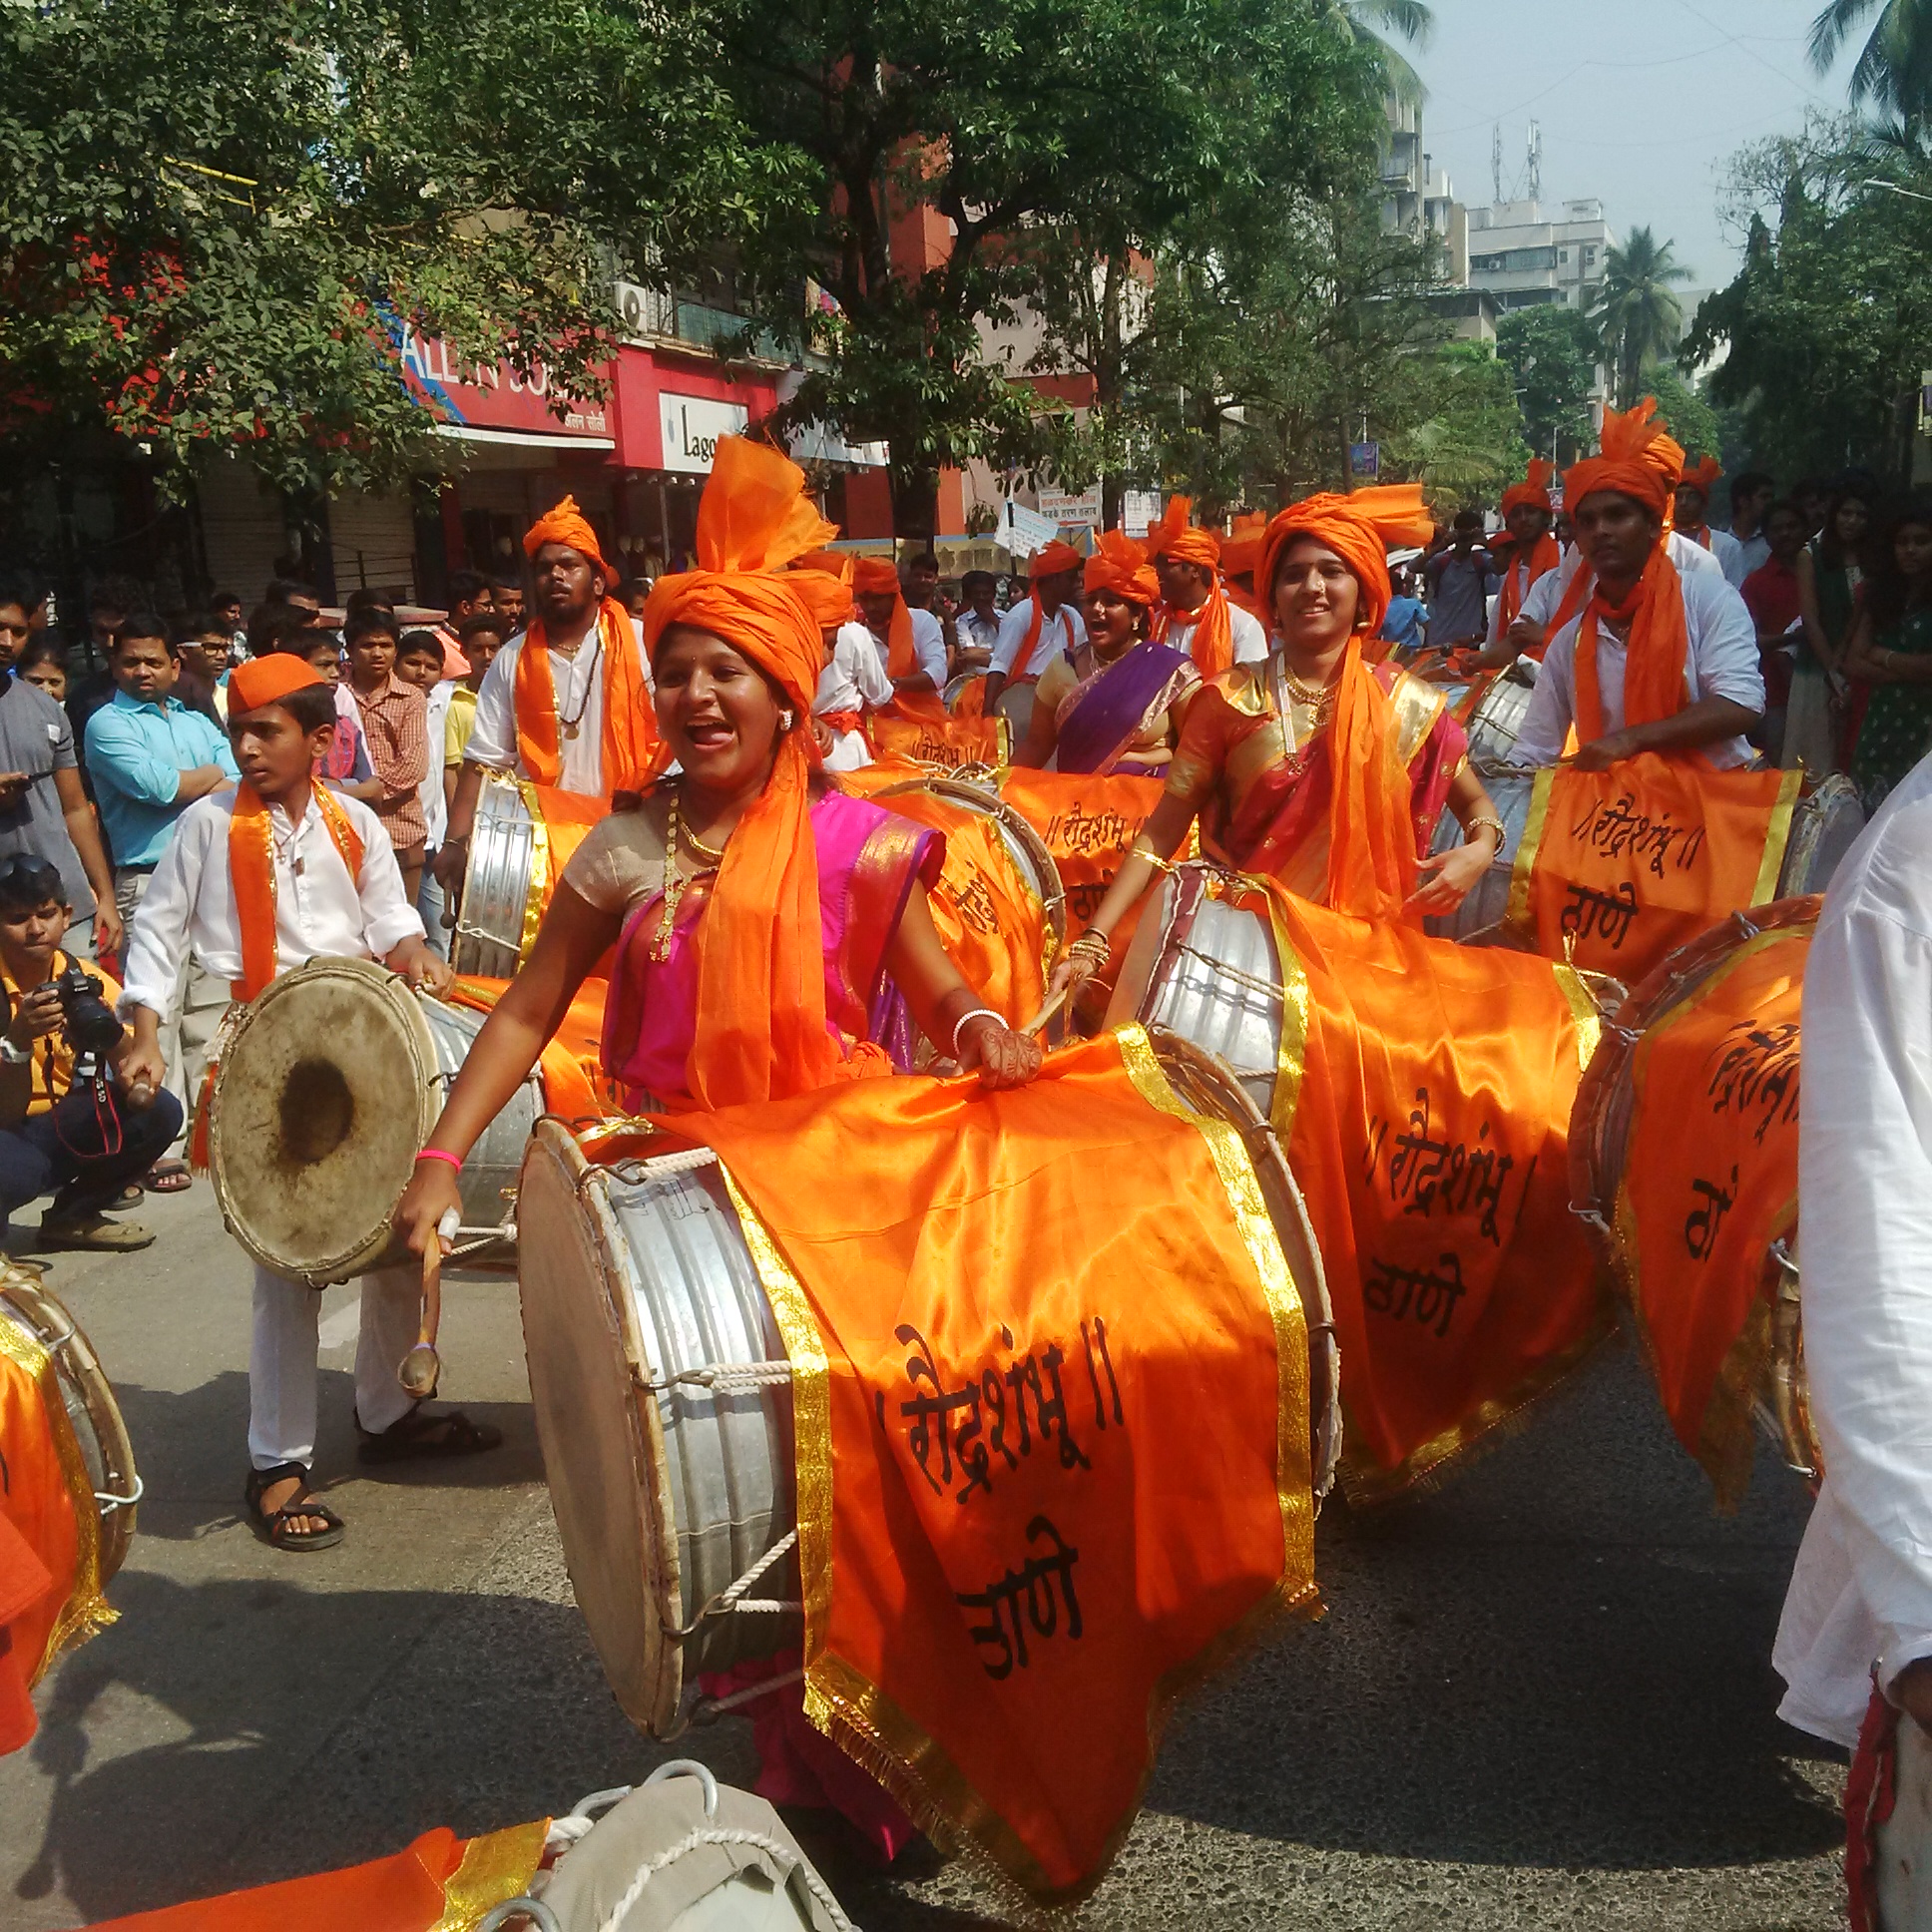 The Shobha Yatra in Gudi Padwa Celebrations in India